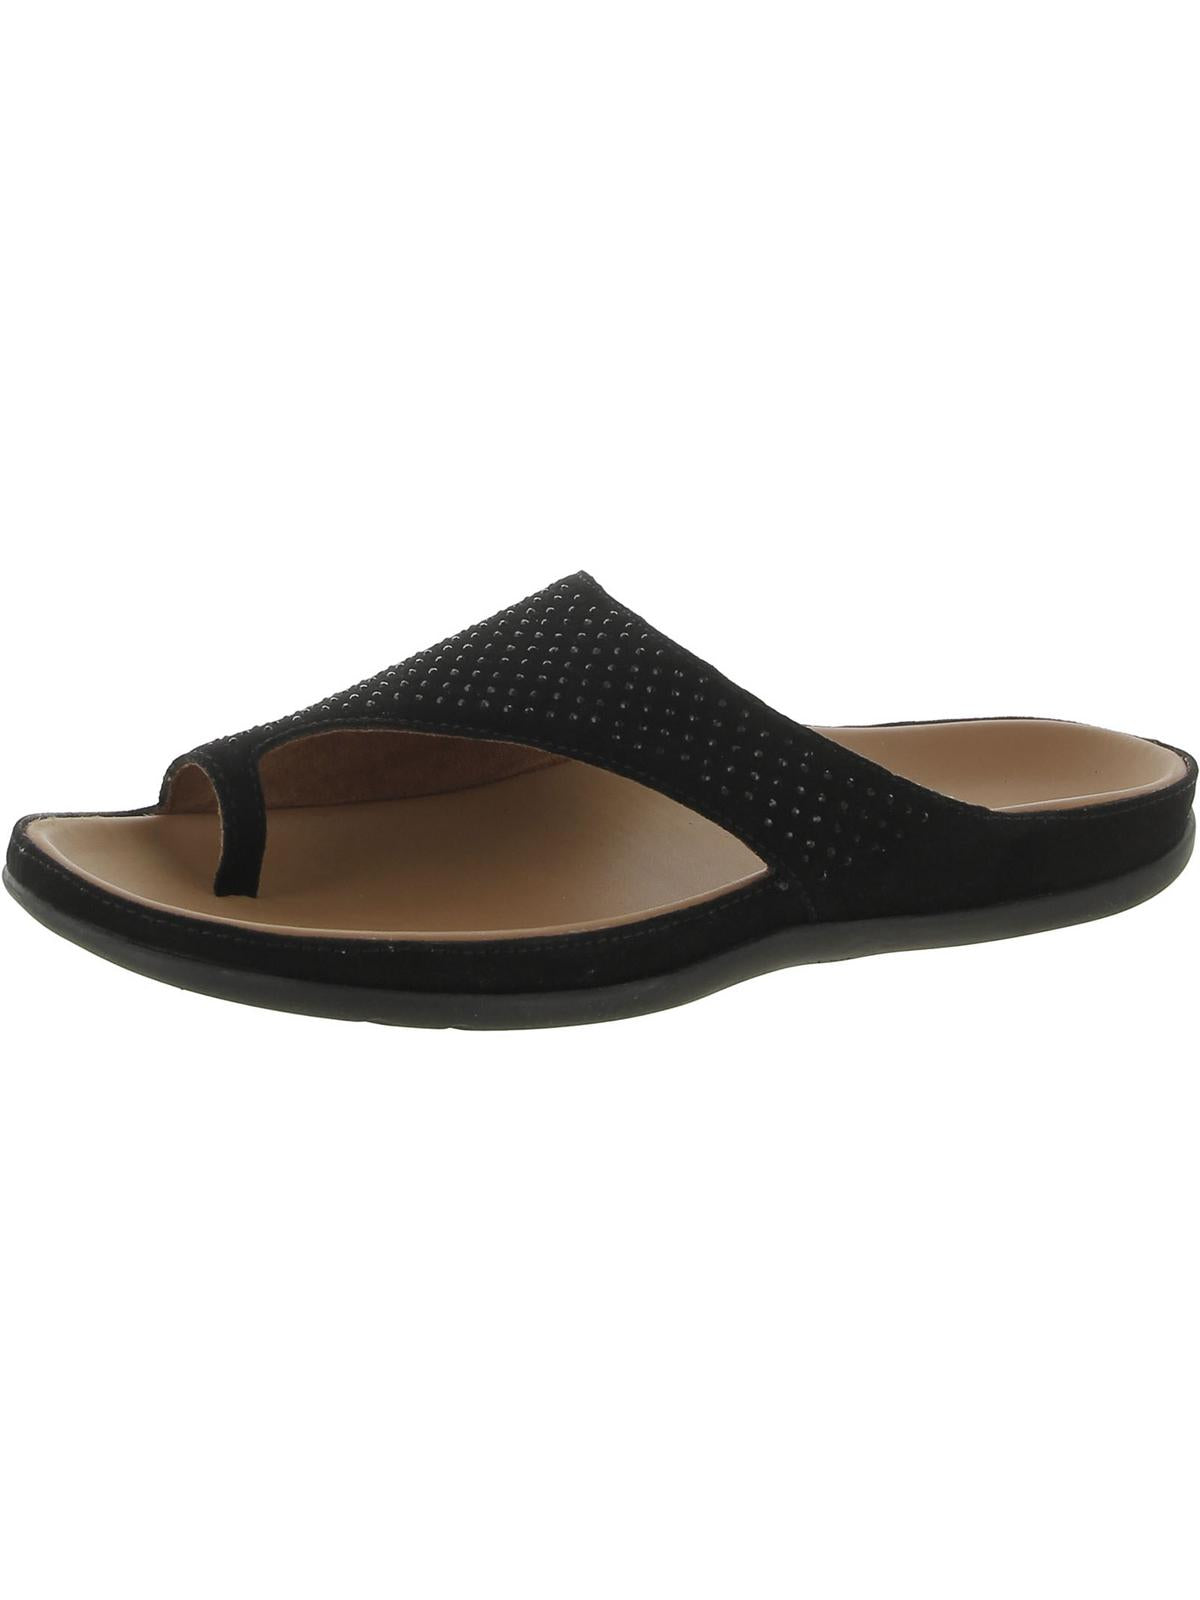 Shop Strive Belize Womens Embellished Leather Slide Sandals In Black